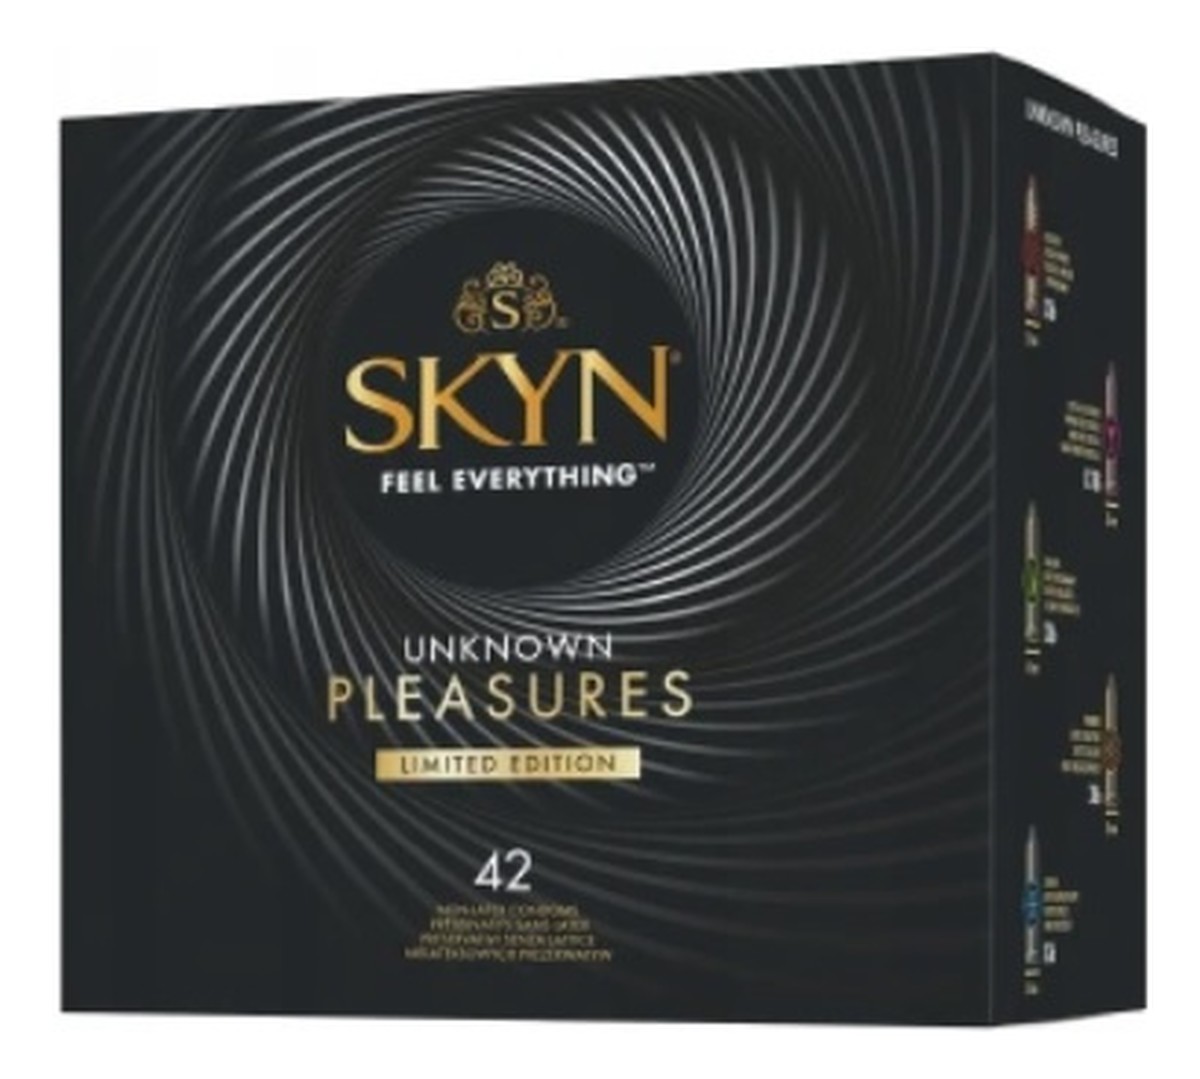 Skyn unknown pleasures limited edition nielateksowe prezerwatywy mix 42szt.